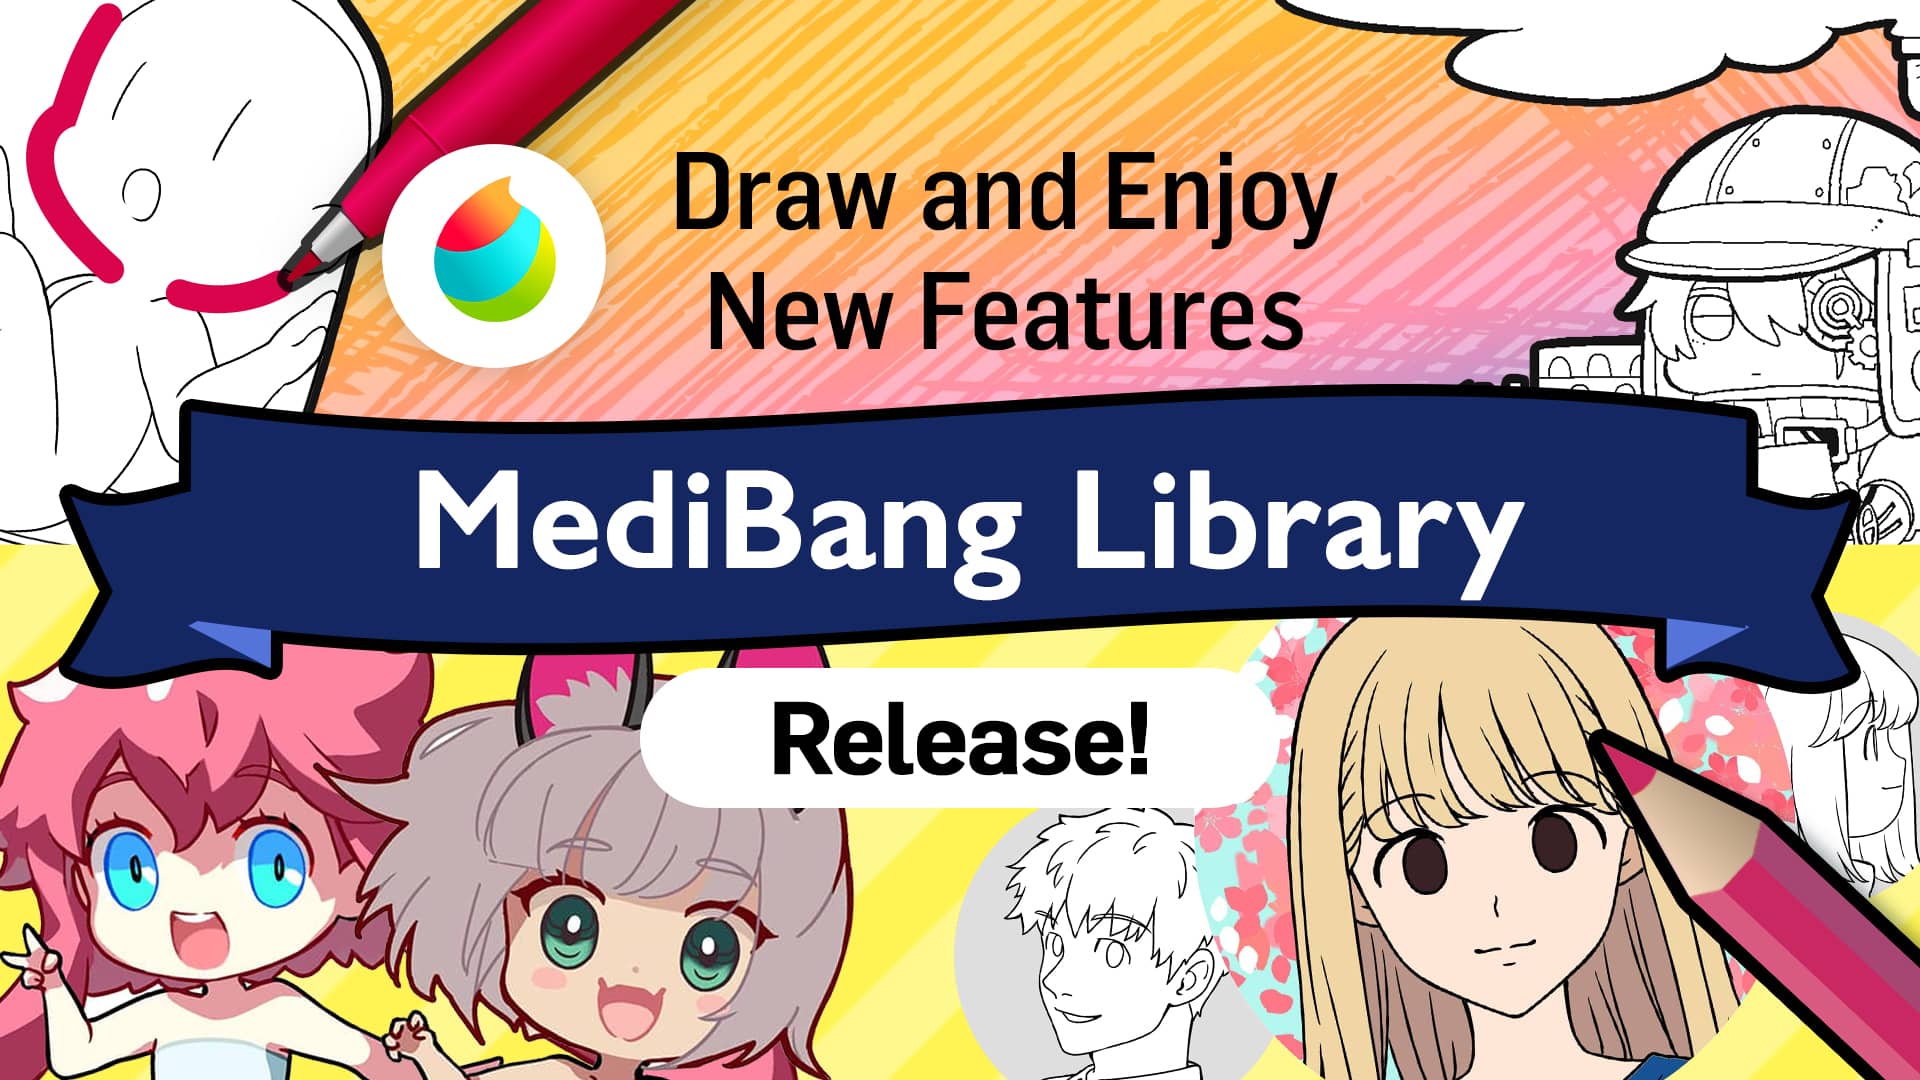 Vamos desenhar um mascote adorável!  MediBang Paint - the free digital  painting and manga creation software